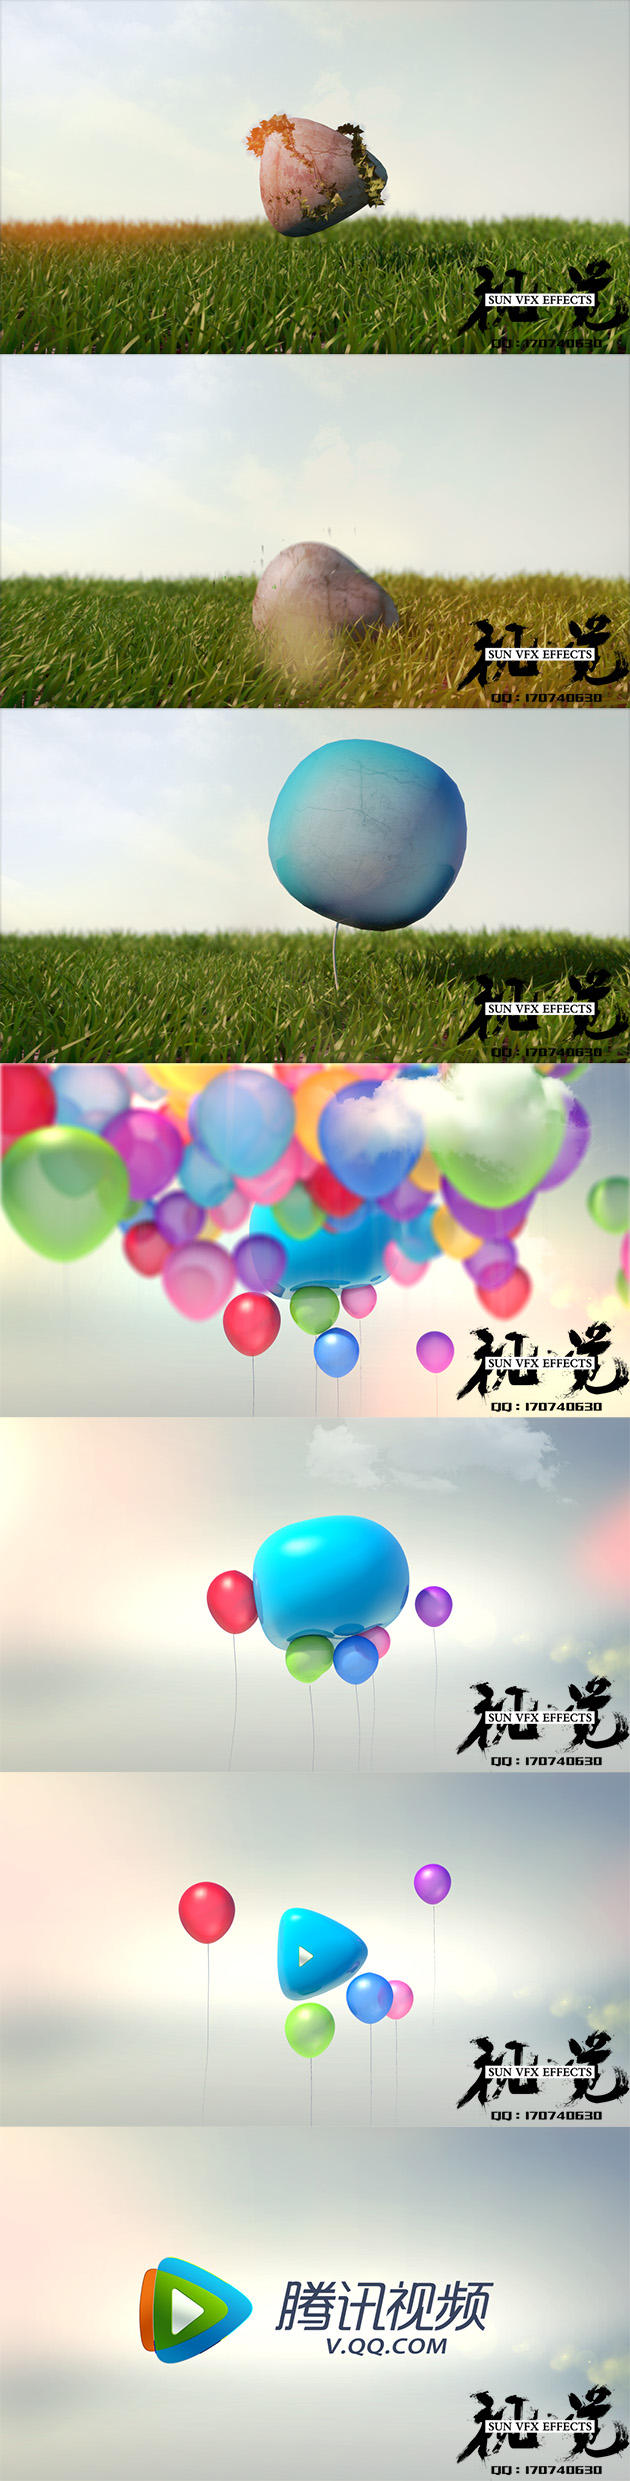 《腾讯气球》案例and制作花絮.jpg